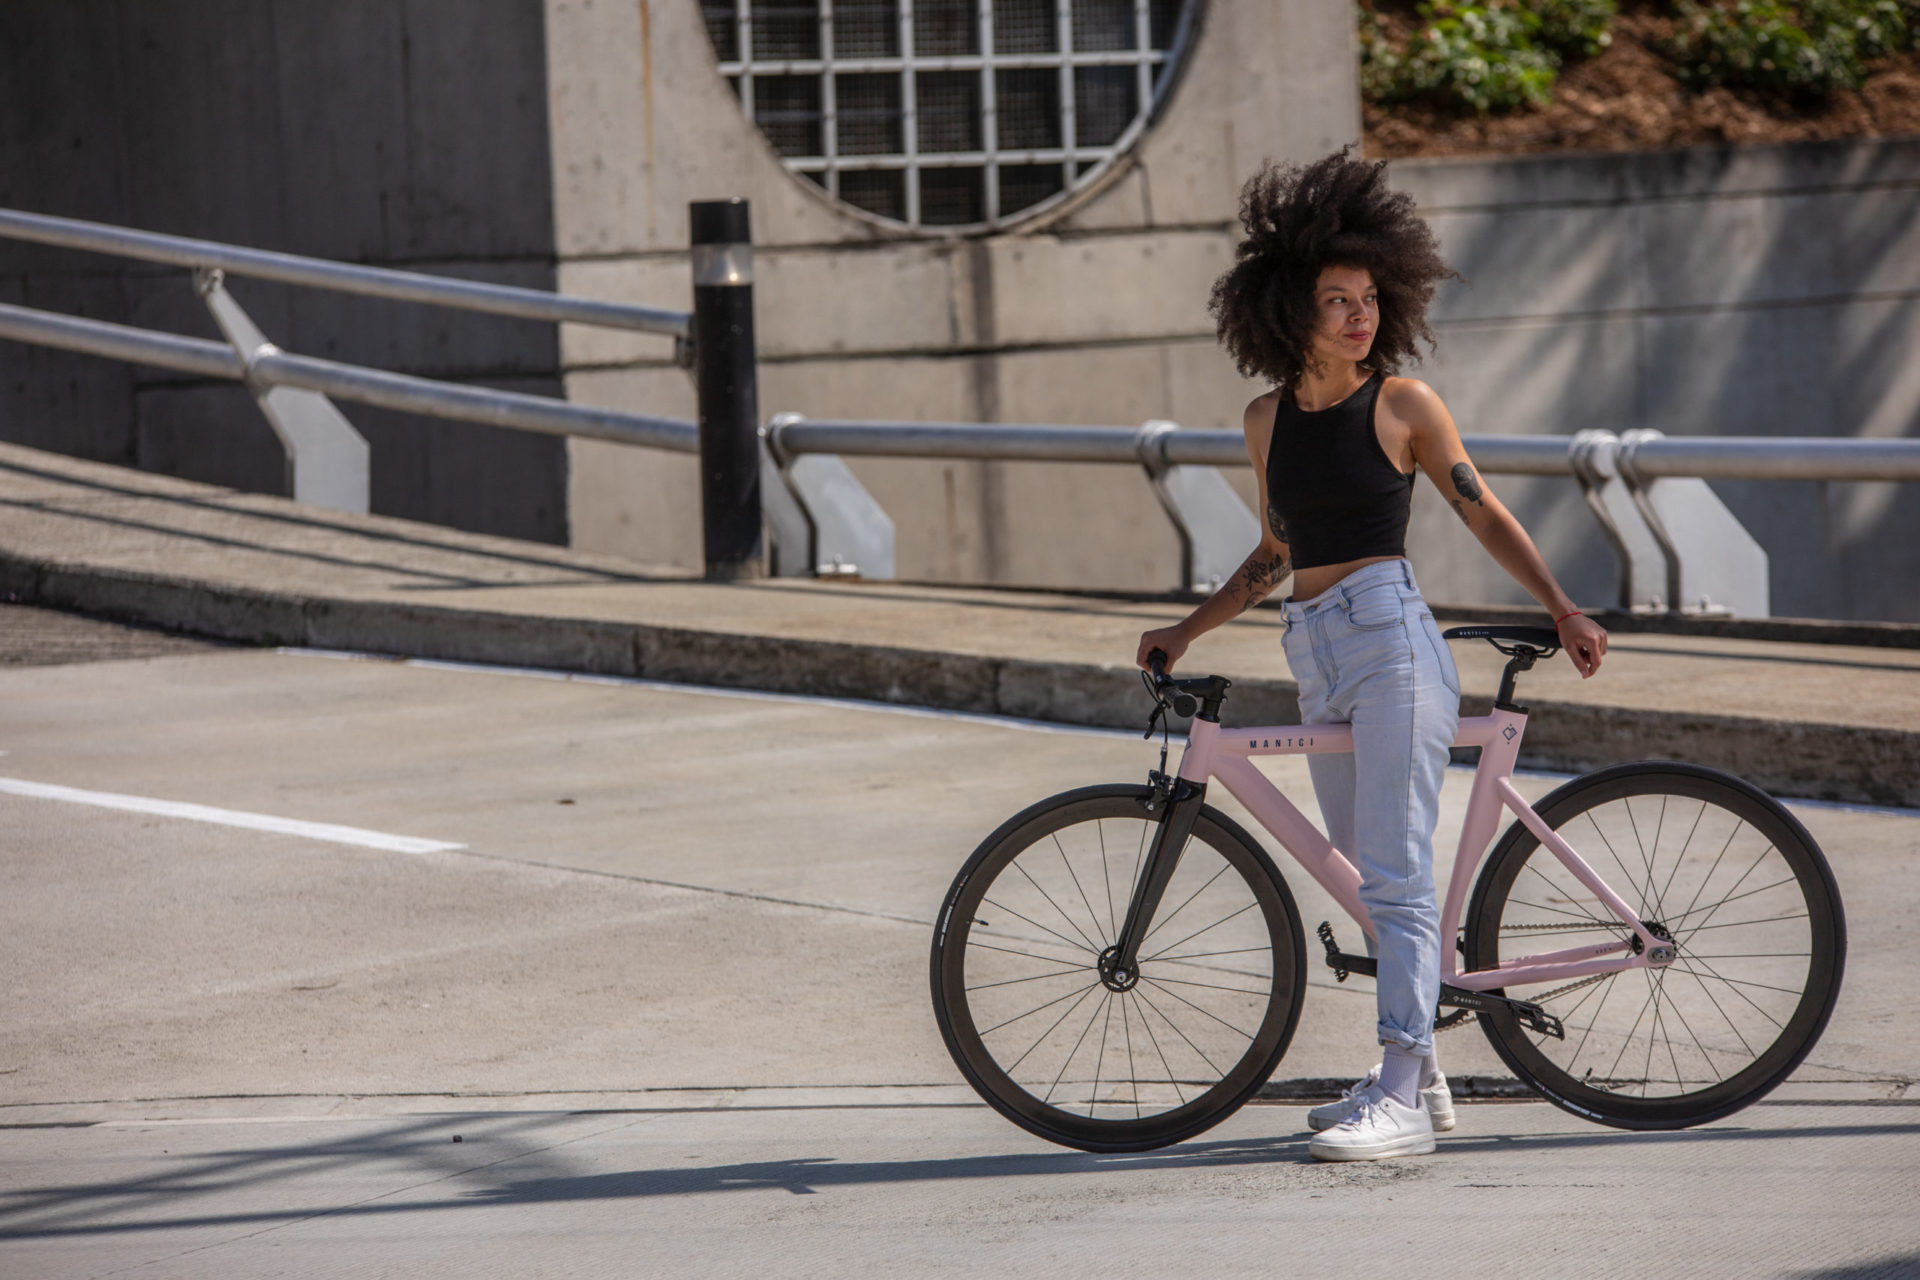 Bicicleta para ciudad, bicicletas, bicis ciudad, bicicletas de ciudad, fixie, single speed, bicis urbanas, bicicletas urbanas, bicis sin cambios, bicicletas sin cambios